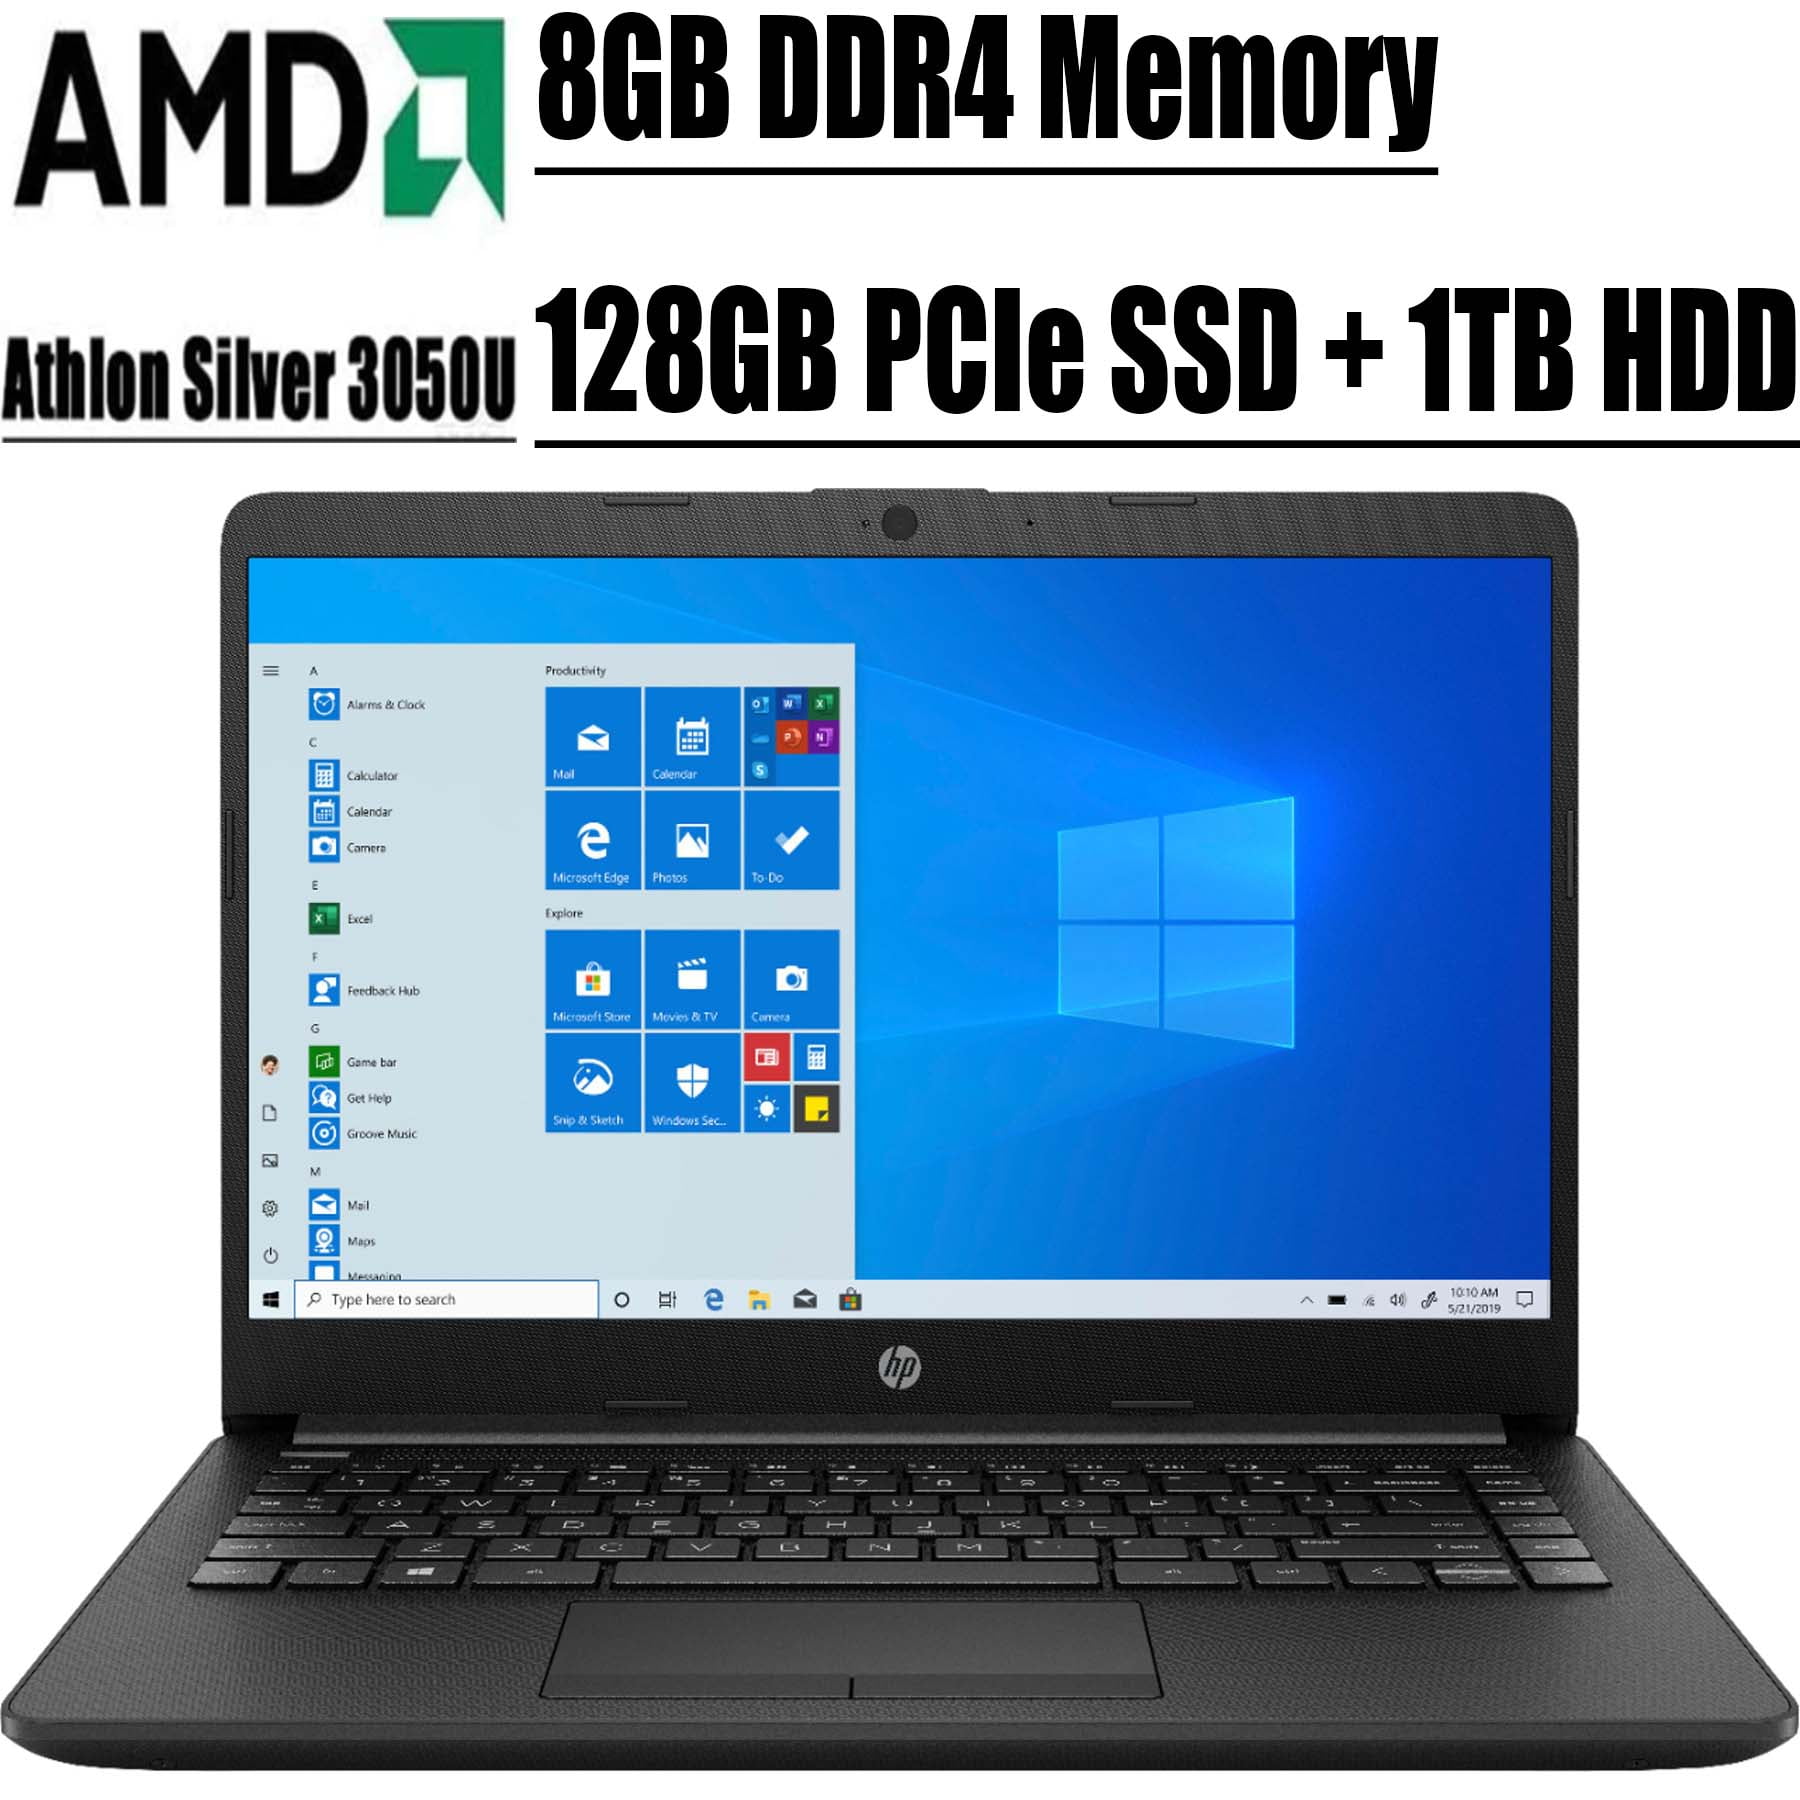 Windows 10 S Beat i5-7200U AMD Athlon Silver 3050U up to 3.2 GHz 8GB DDR4 RAM HDMI 128GB SSD+500GB HDD Bluetooth Black Laser HDMI Webcam,WiFi,Type-C 2020 Newest HP 14 Inch Premium Laptop